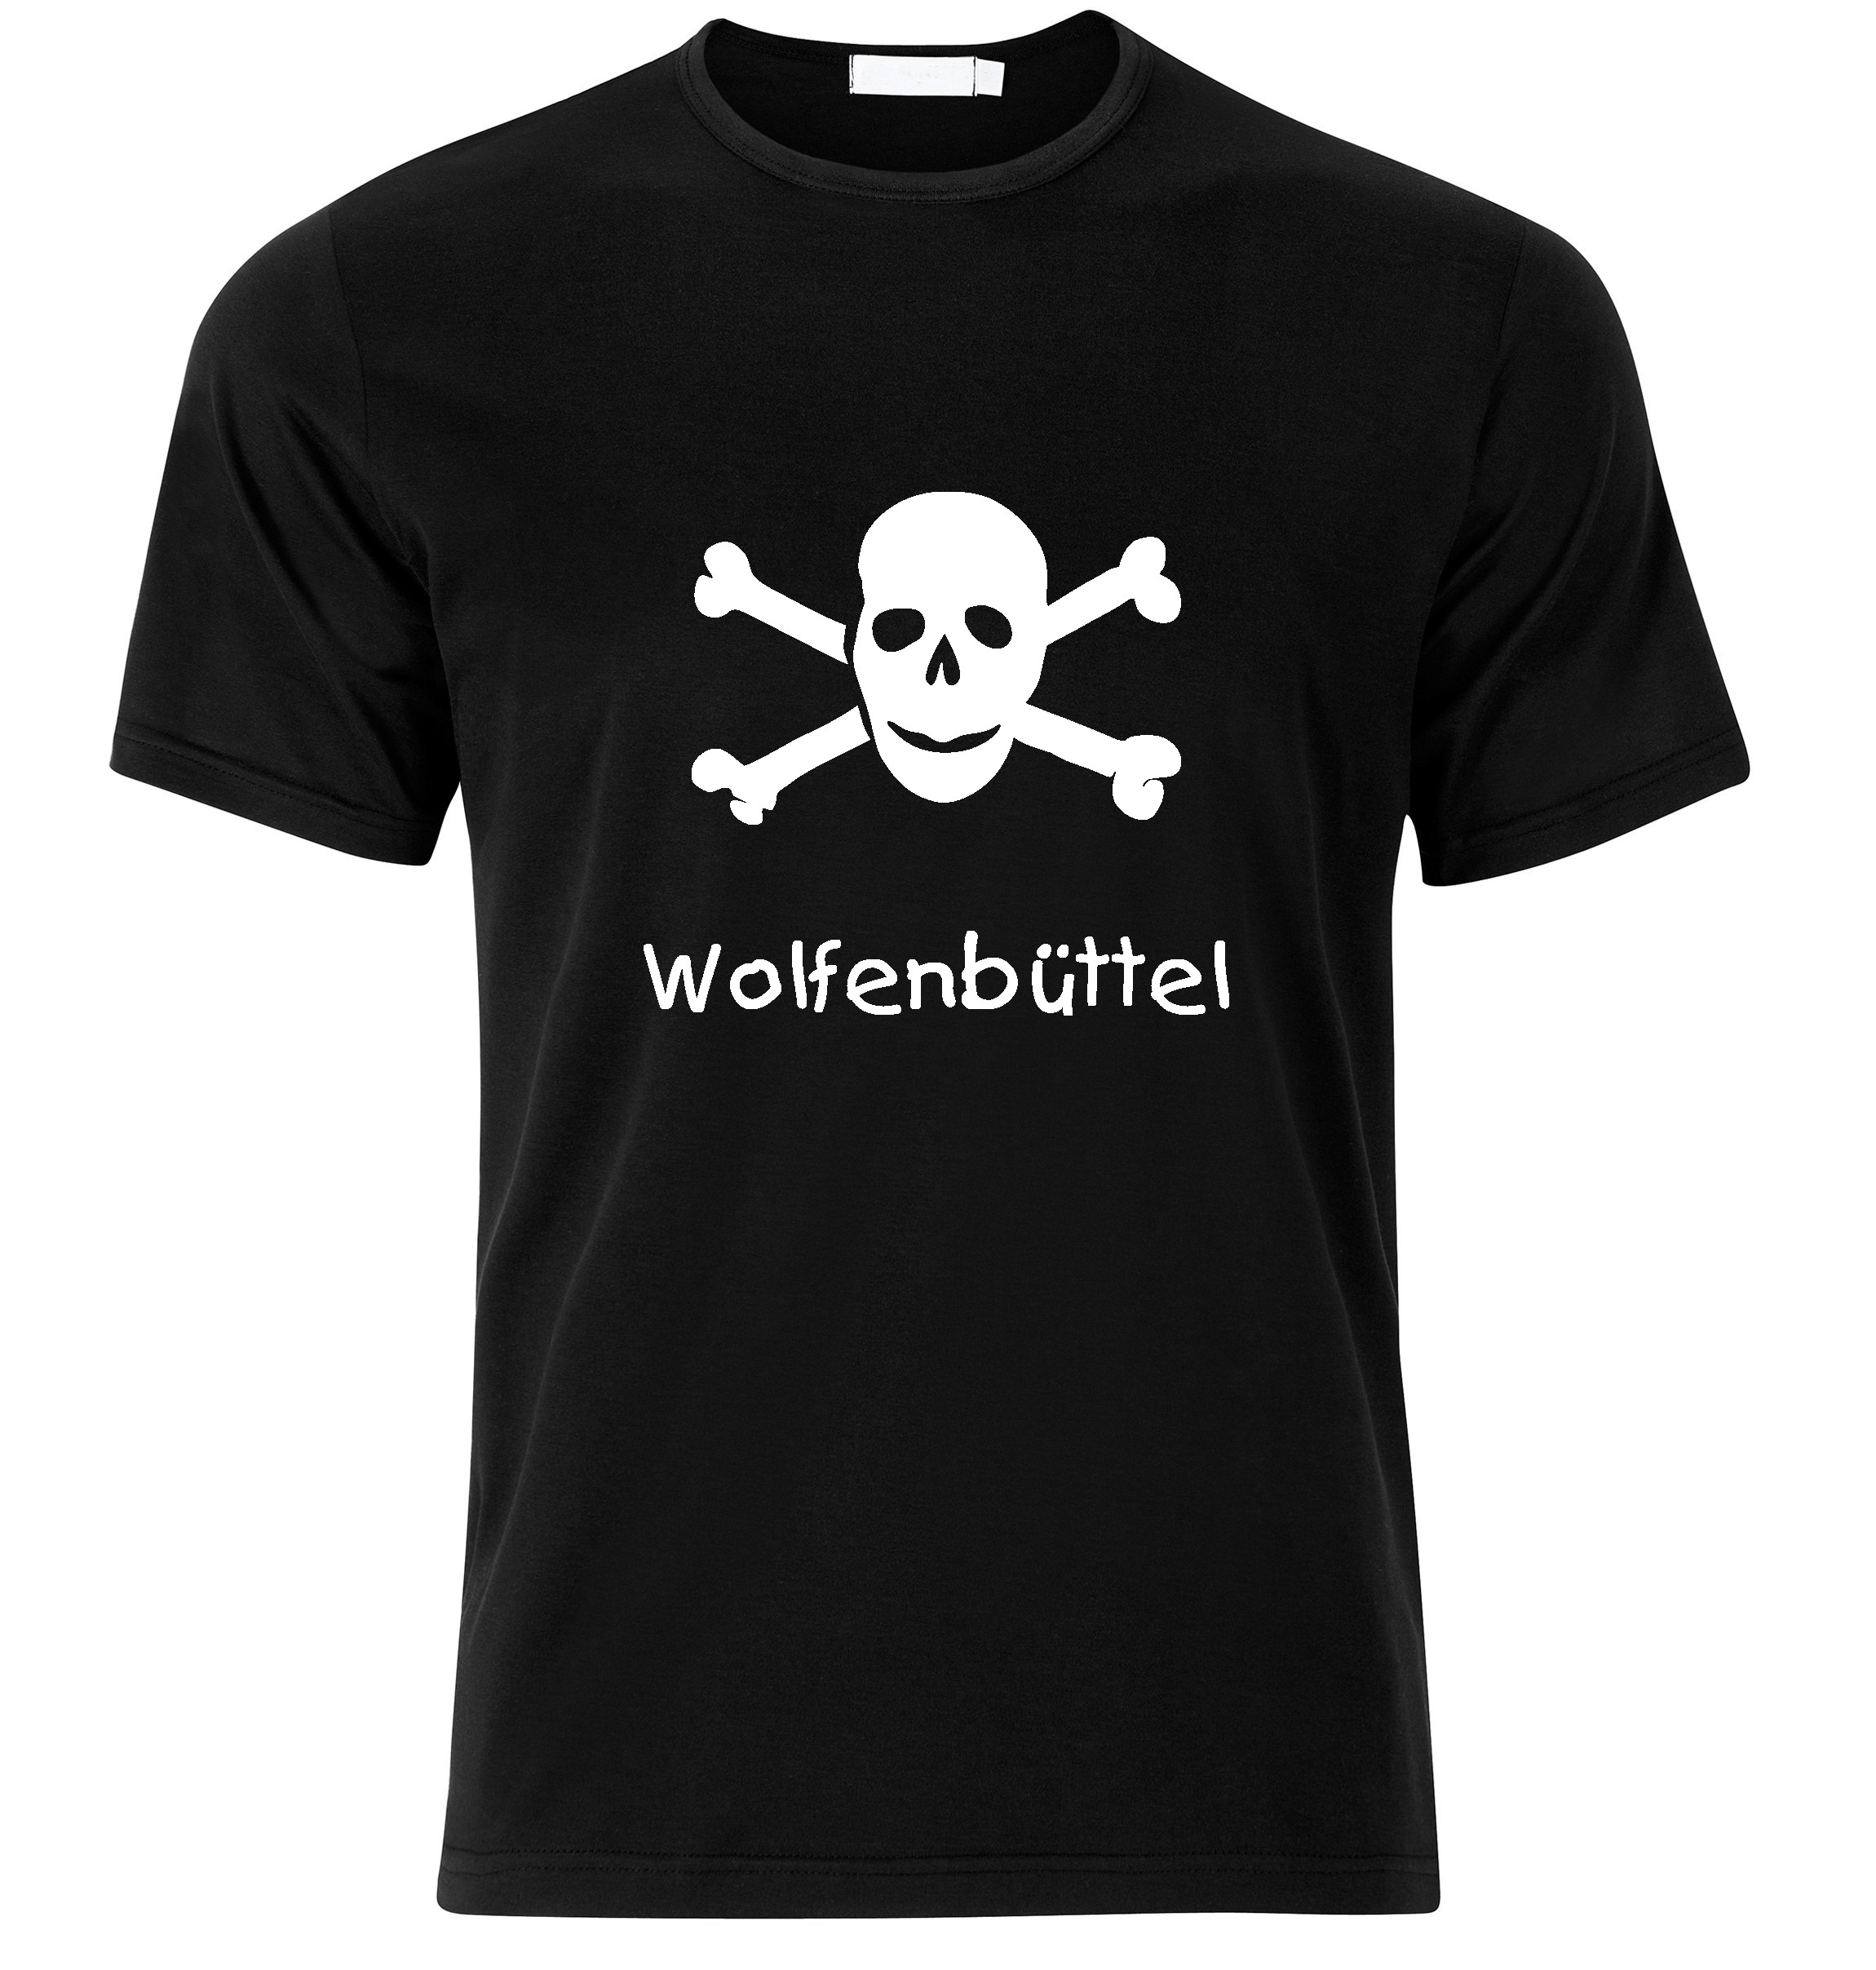 T-Shirt Wolfenbüttel Jolly Roger, Totenkopf